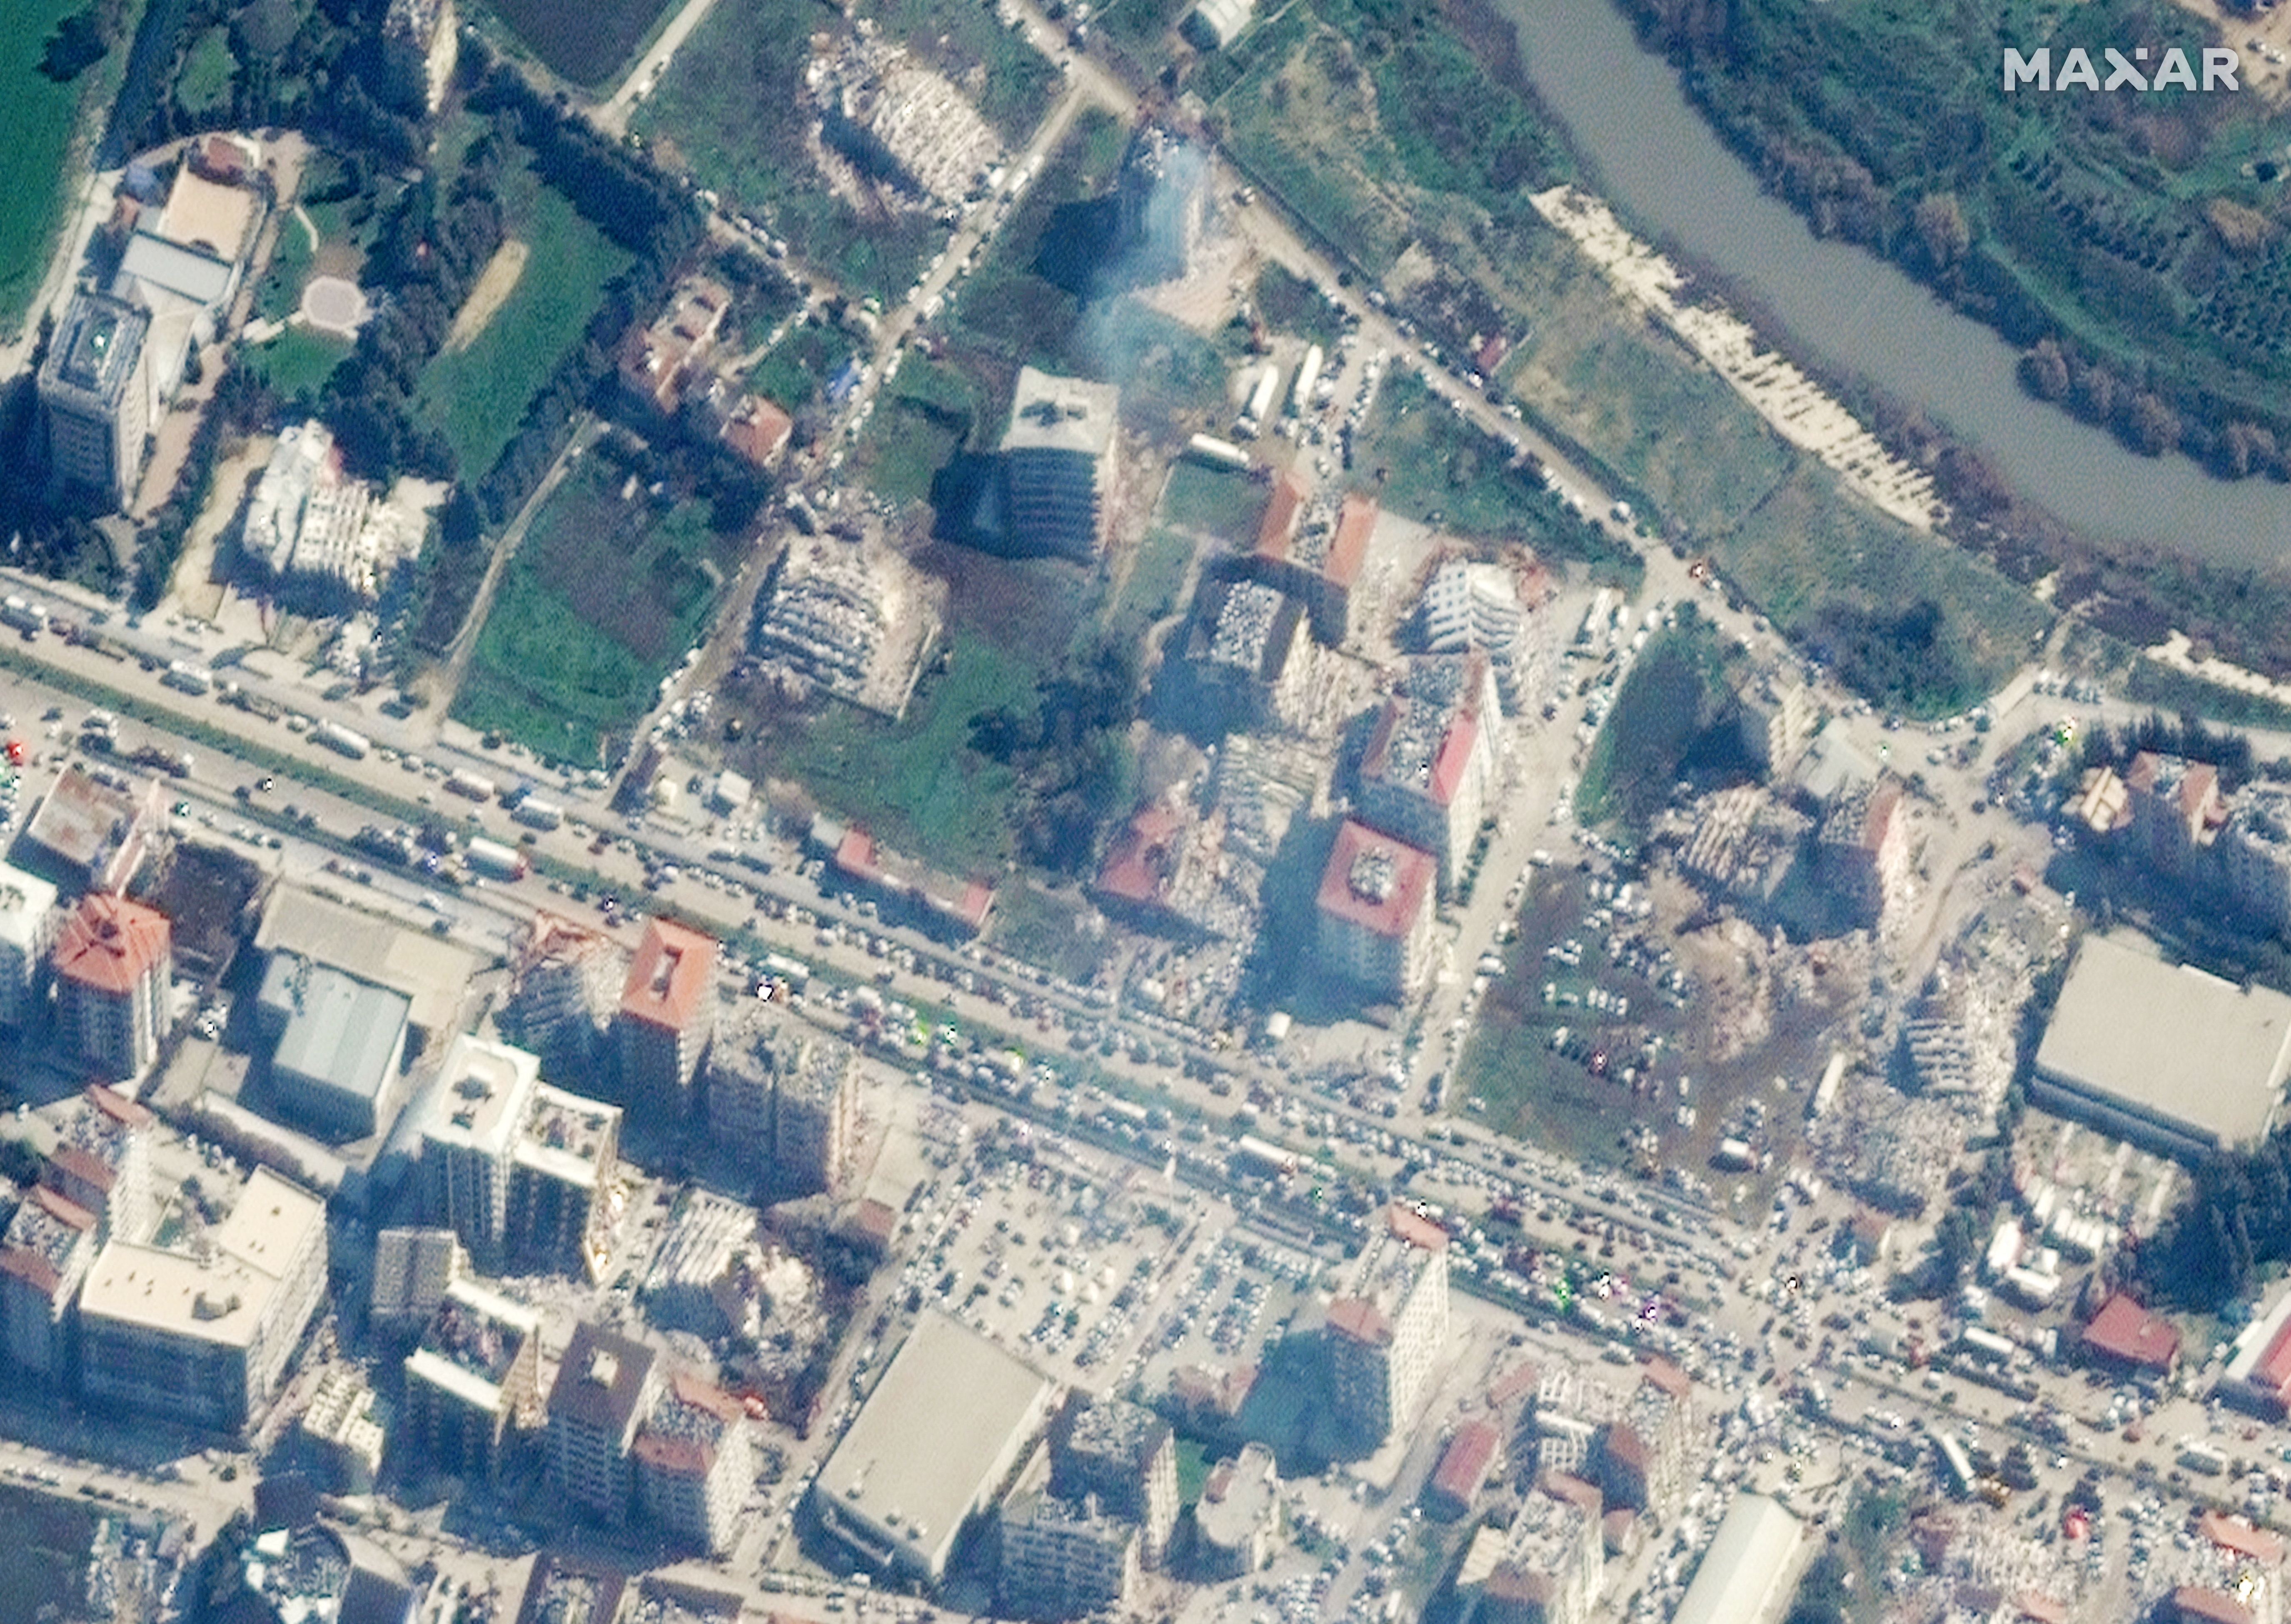 Así quedaron los edificios derrumbados y humeantes después de un terremoto en Antakya, Turquía, el 8 de febrero de 2023. Imagen satelital ©2023 Maxar Technologies/Handout via REUTERS 